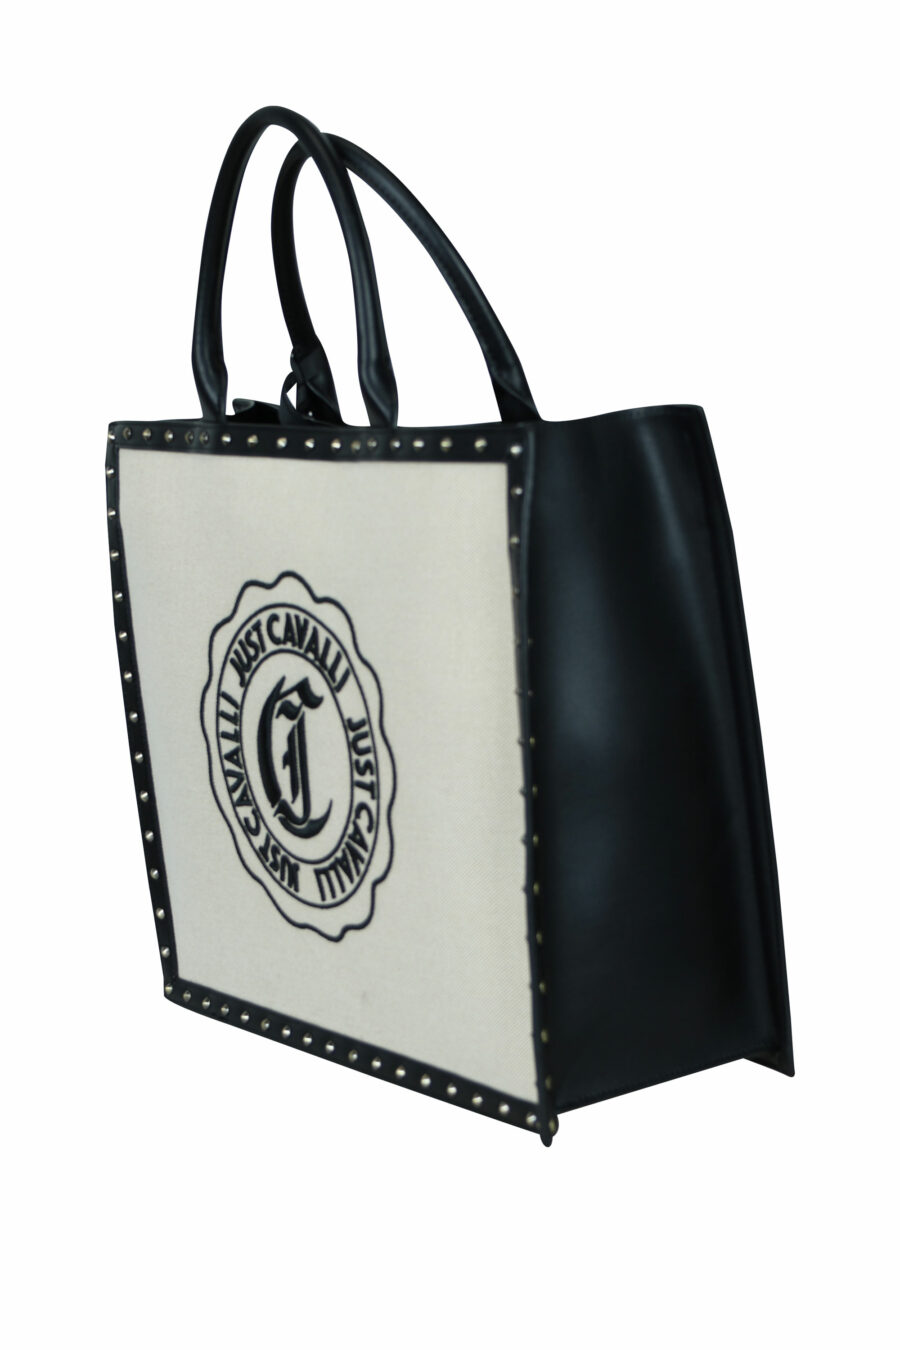 Tote bag negro con logo circular "c" - 8052672642431 1